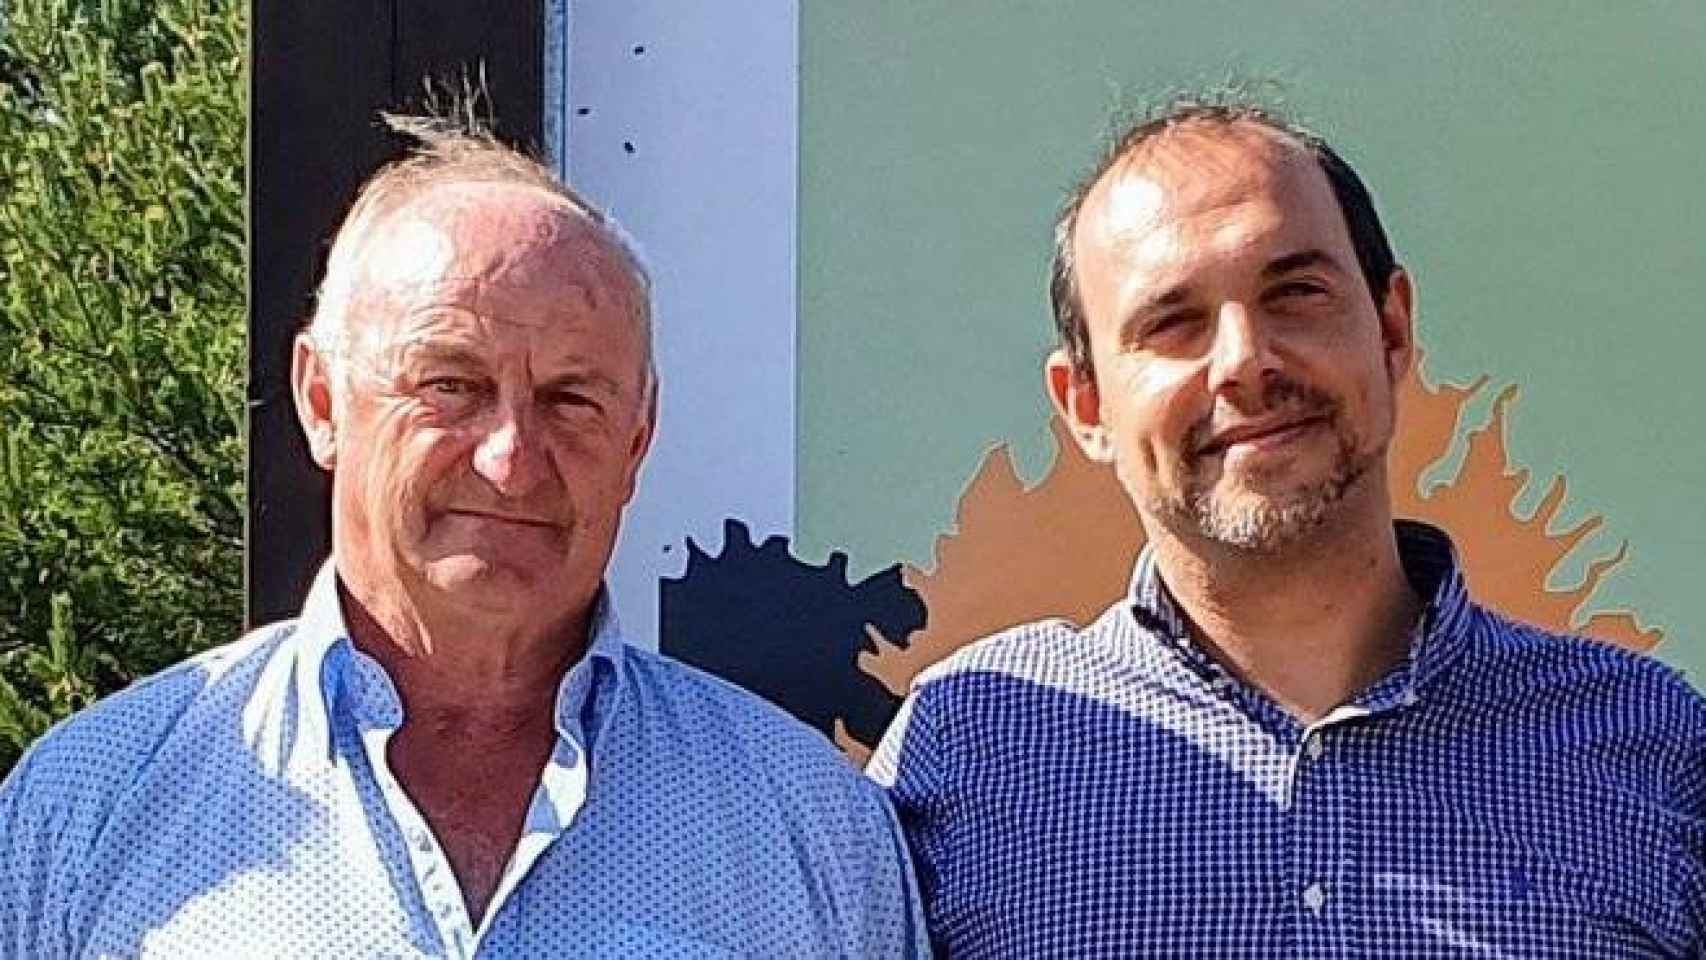 Narciso Arranz Cerezo y Pablo Bellido en la foto que ha publicado en Twitter el presidente de las Cortes